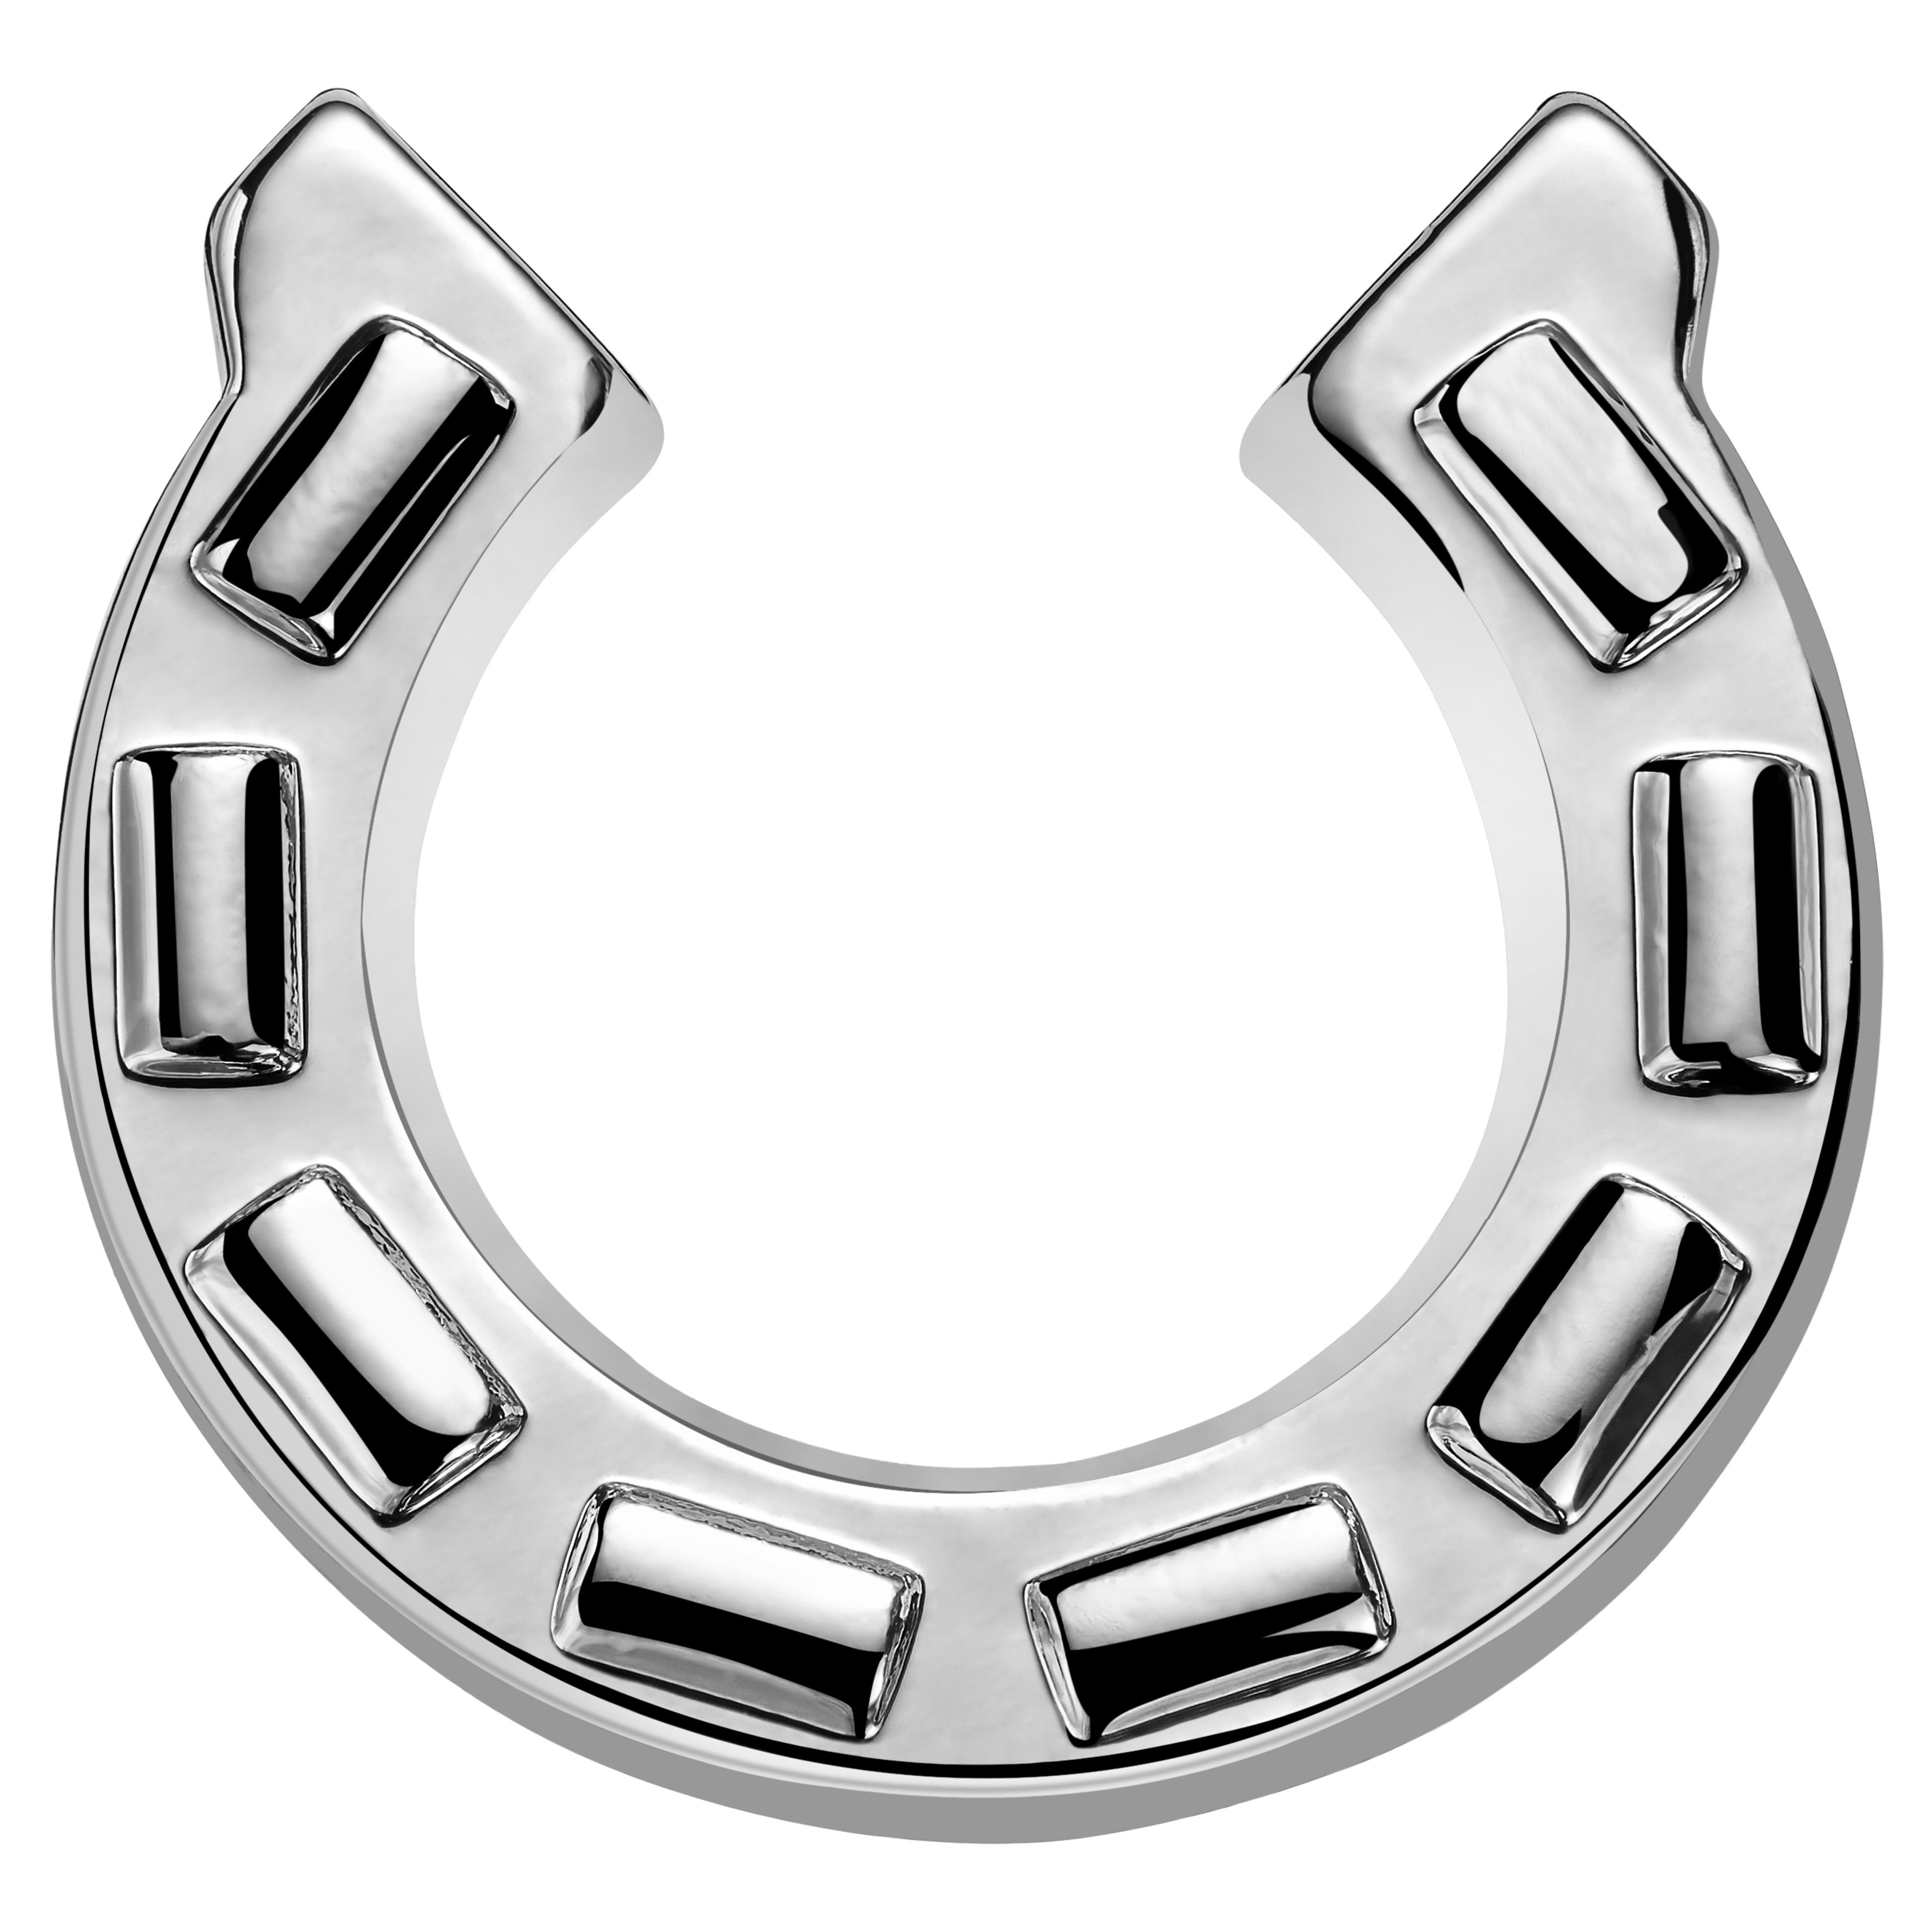 Meraklis | Silver-Tone Horseshoe Lapel Pin